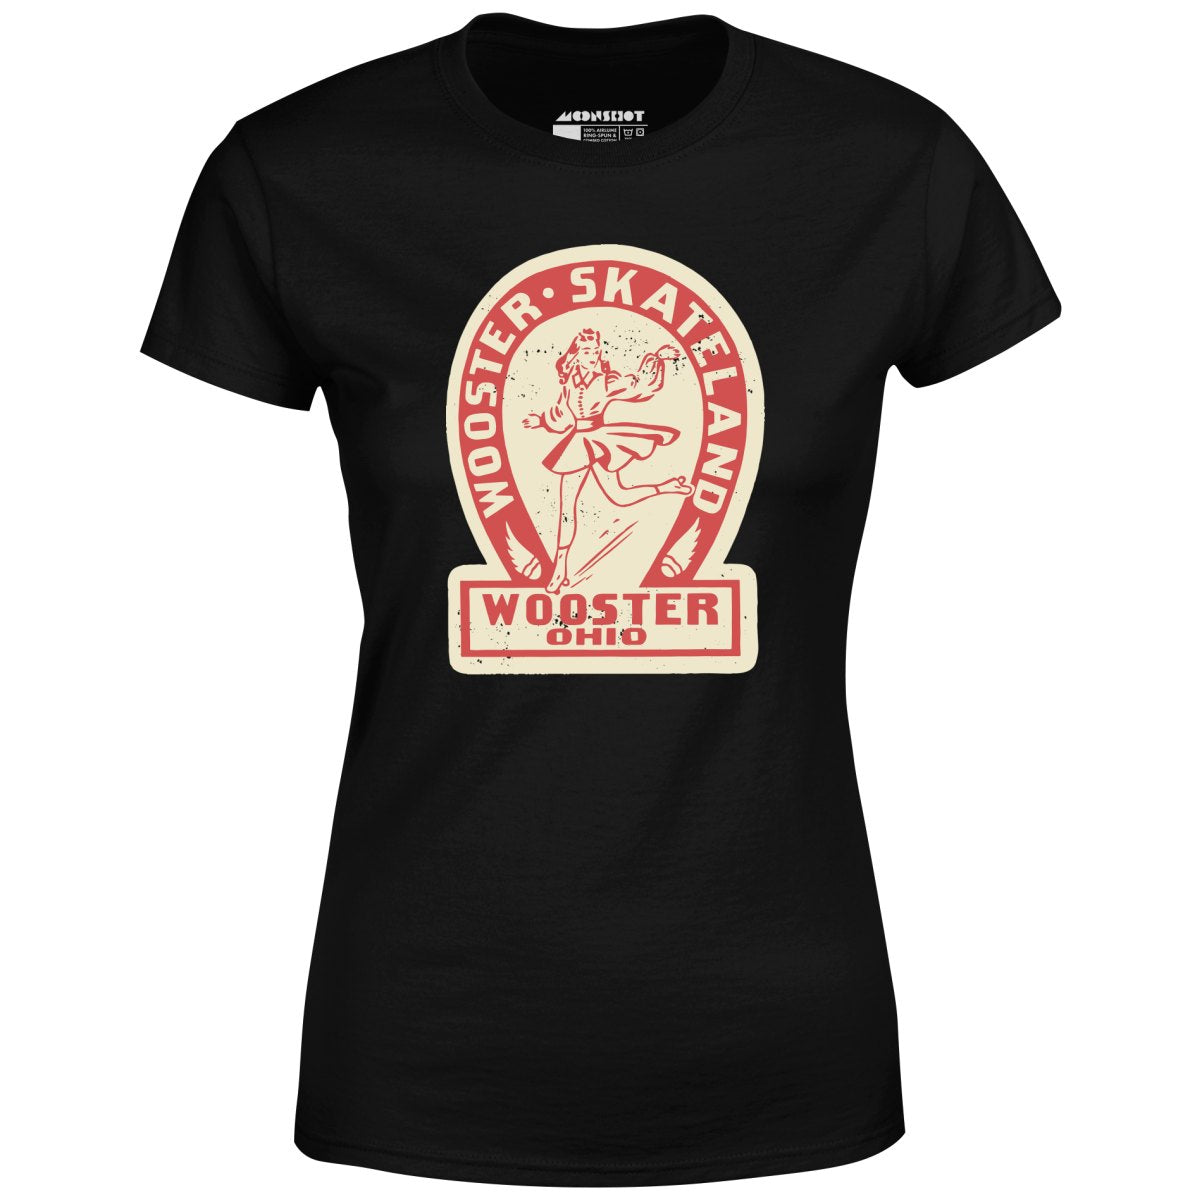 Wooster Skateland - Wooster, OH - Vintage Roller Rink - Women's T-Shirt